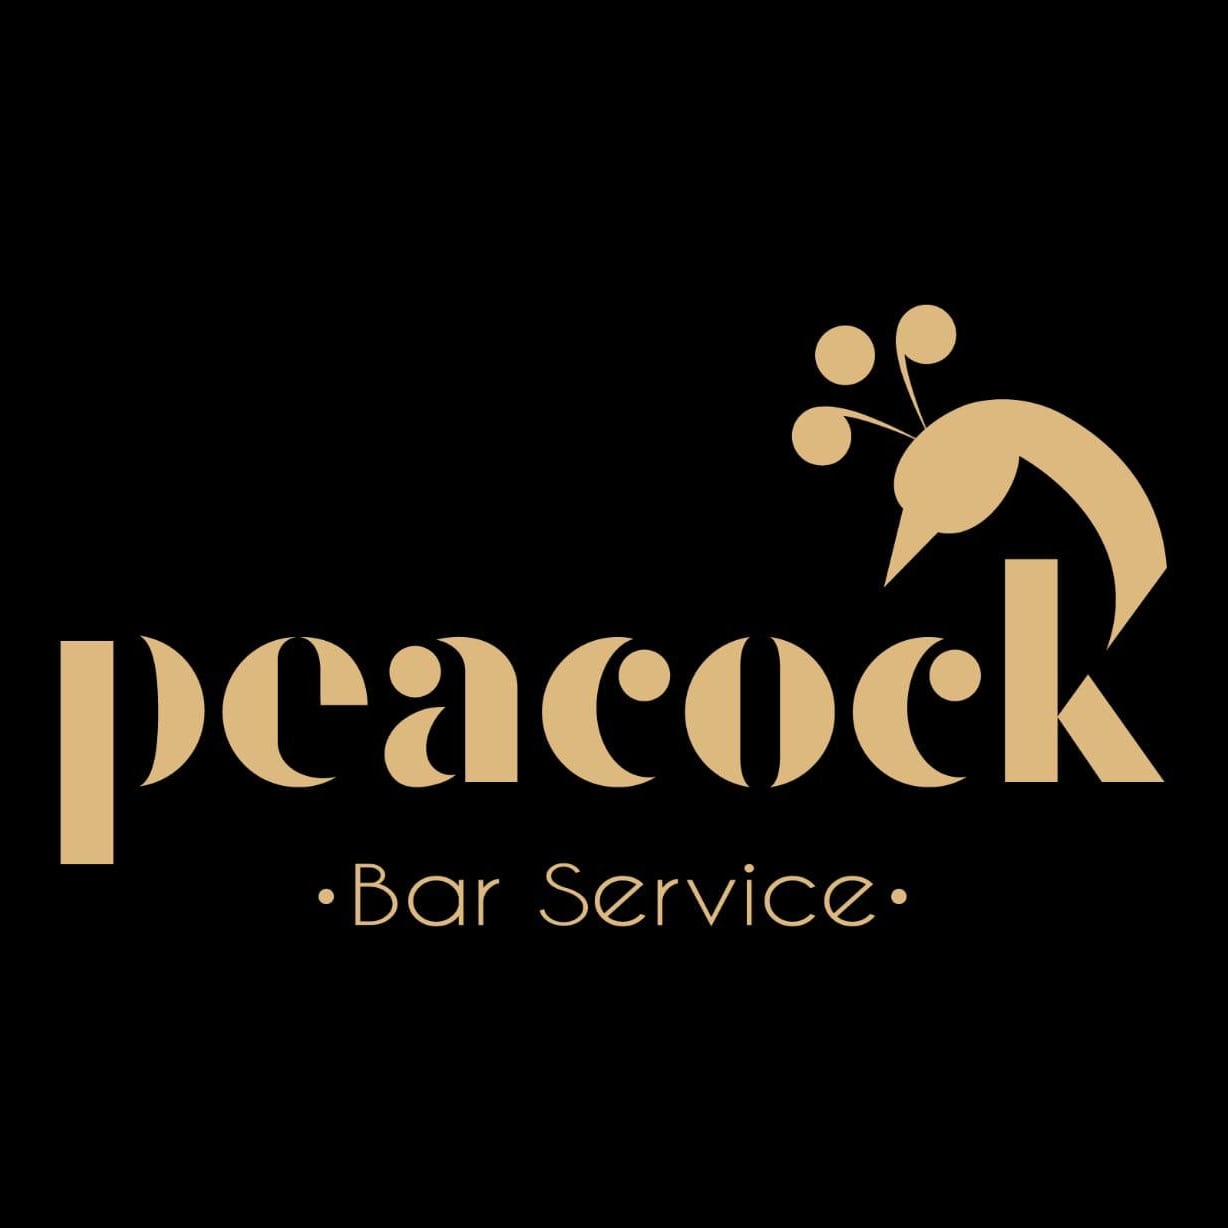 Peacock bar service logo